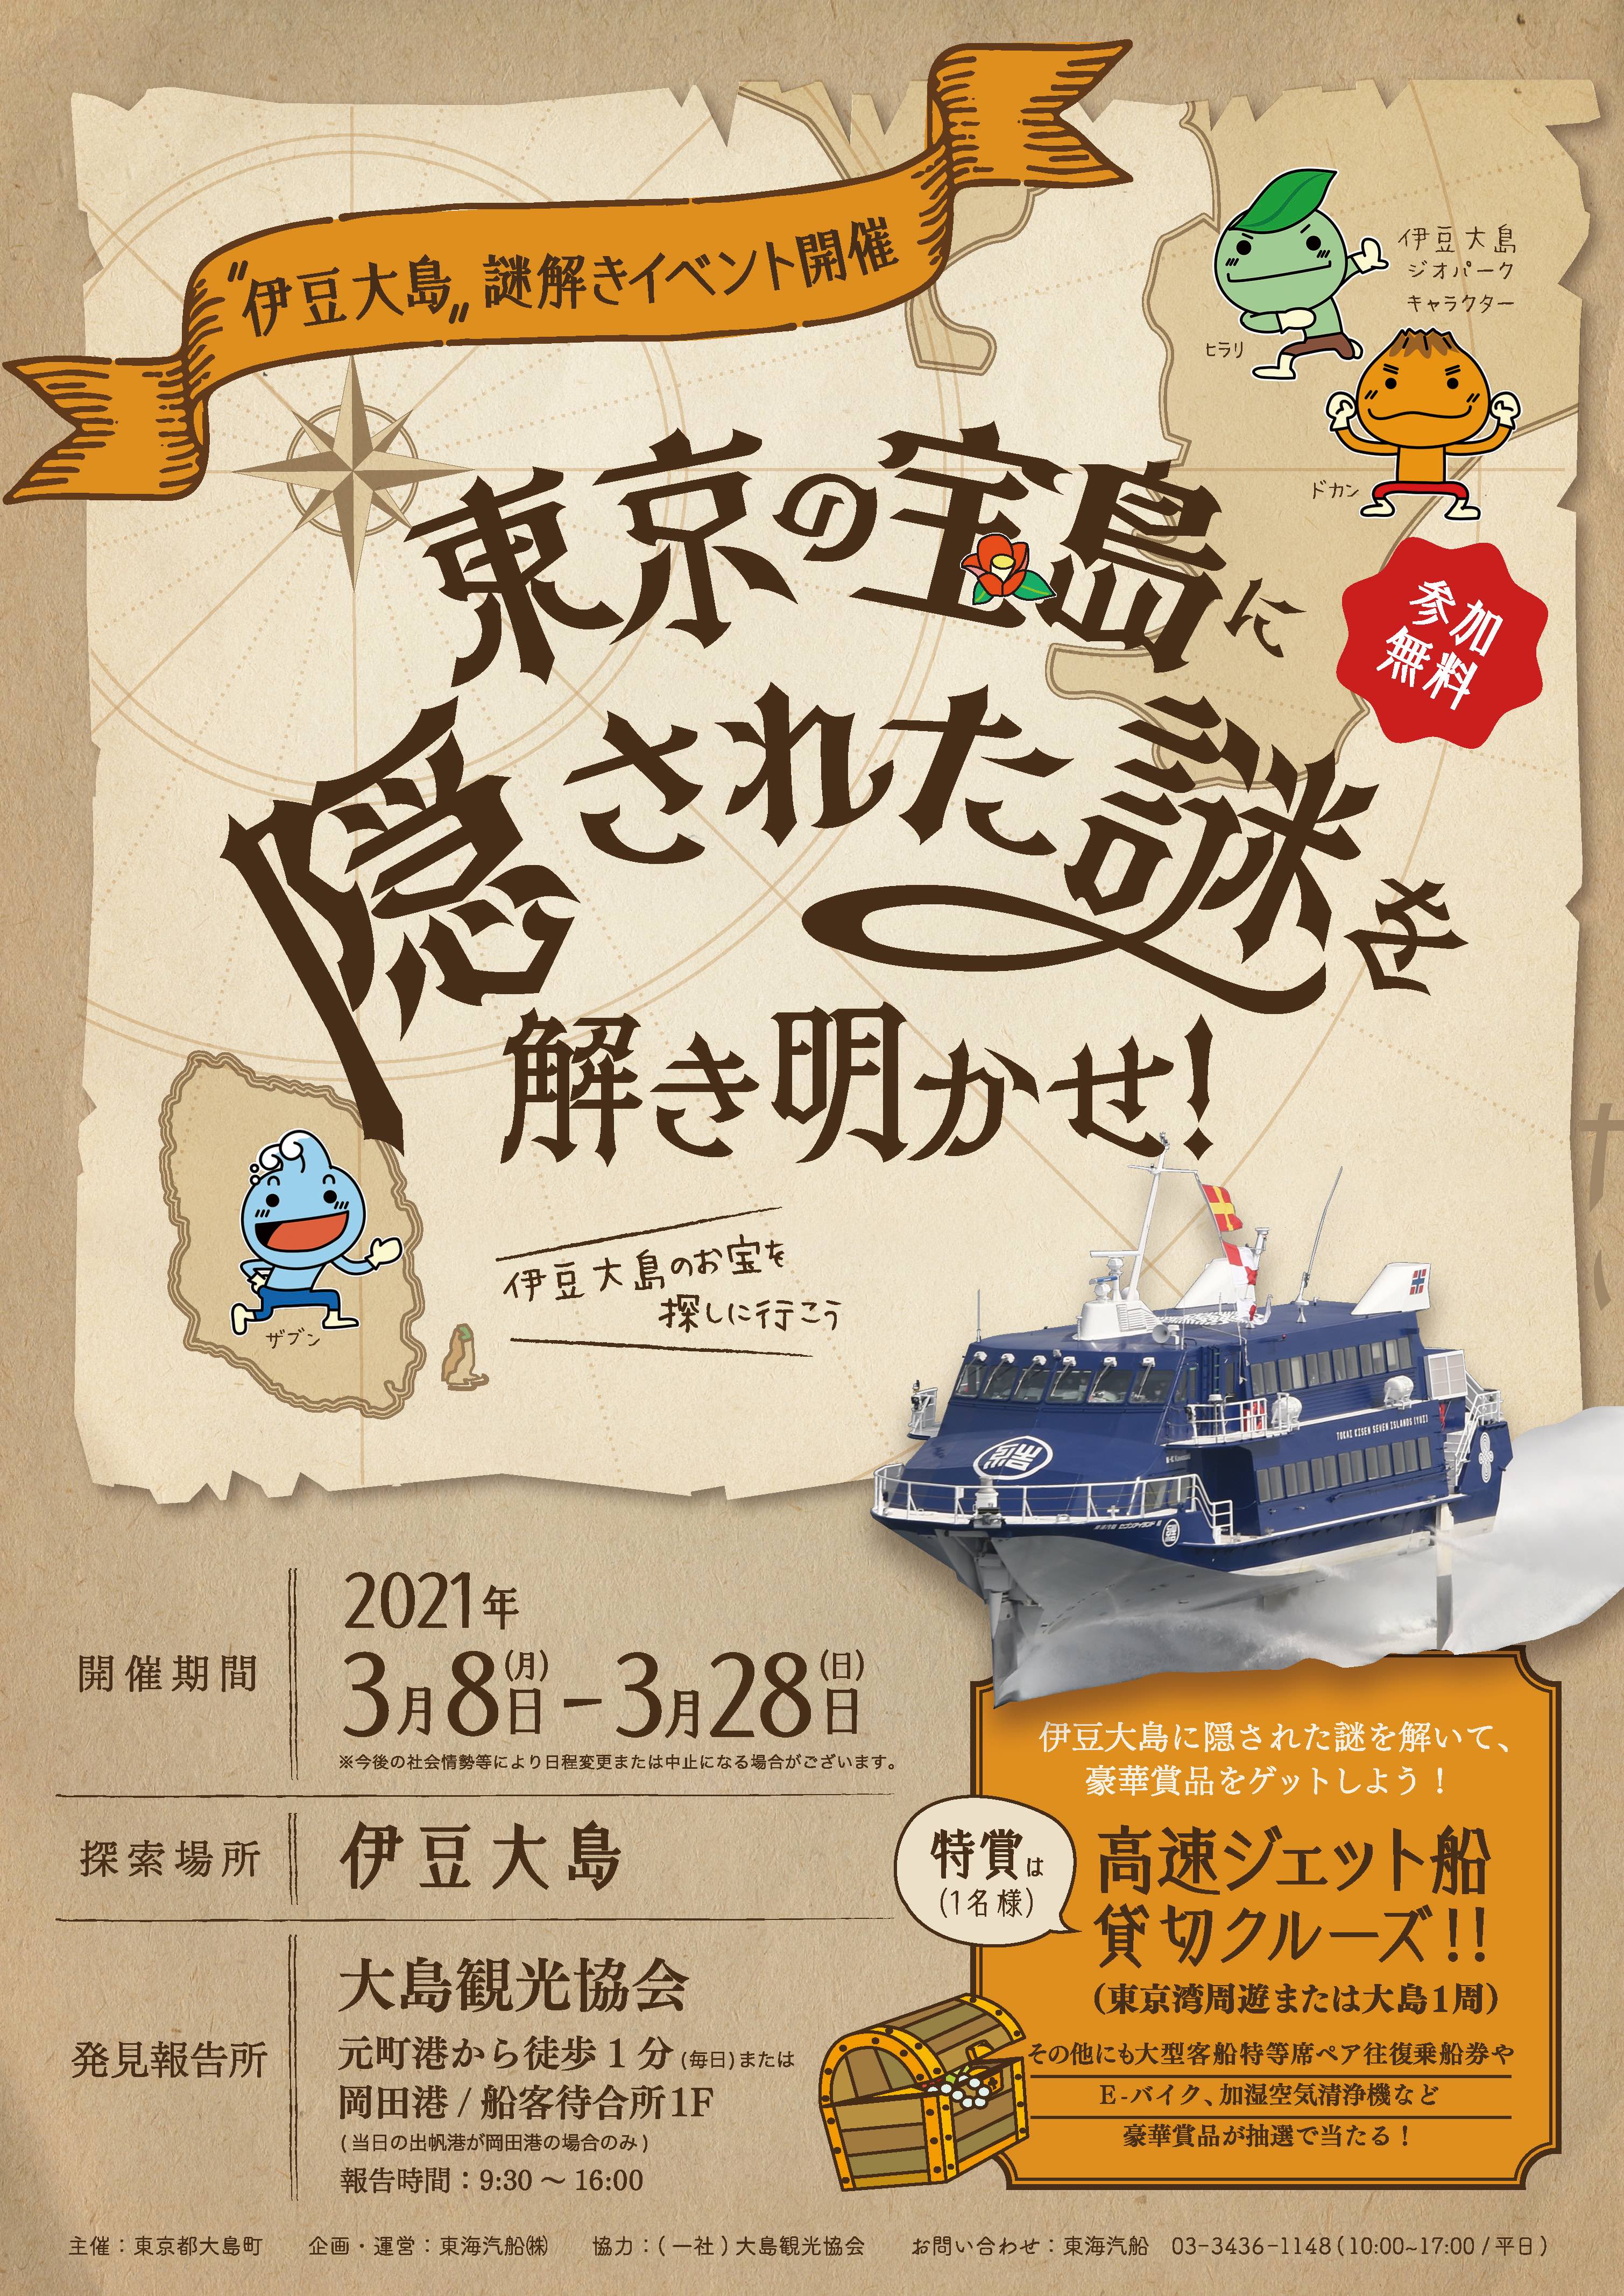 島まるごと謎解きの舞台に 大自然の伊豆大島で 謎解きイベント 開催 東海汽船株式会社のプレスリリース